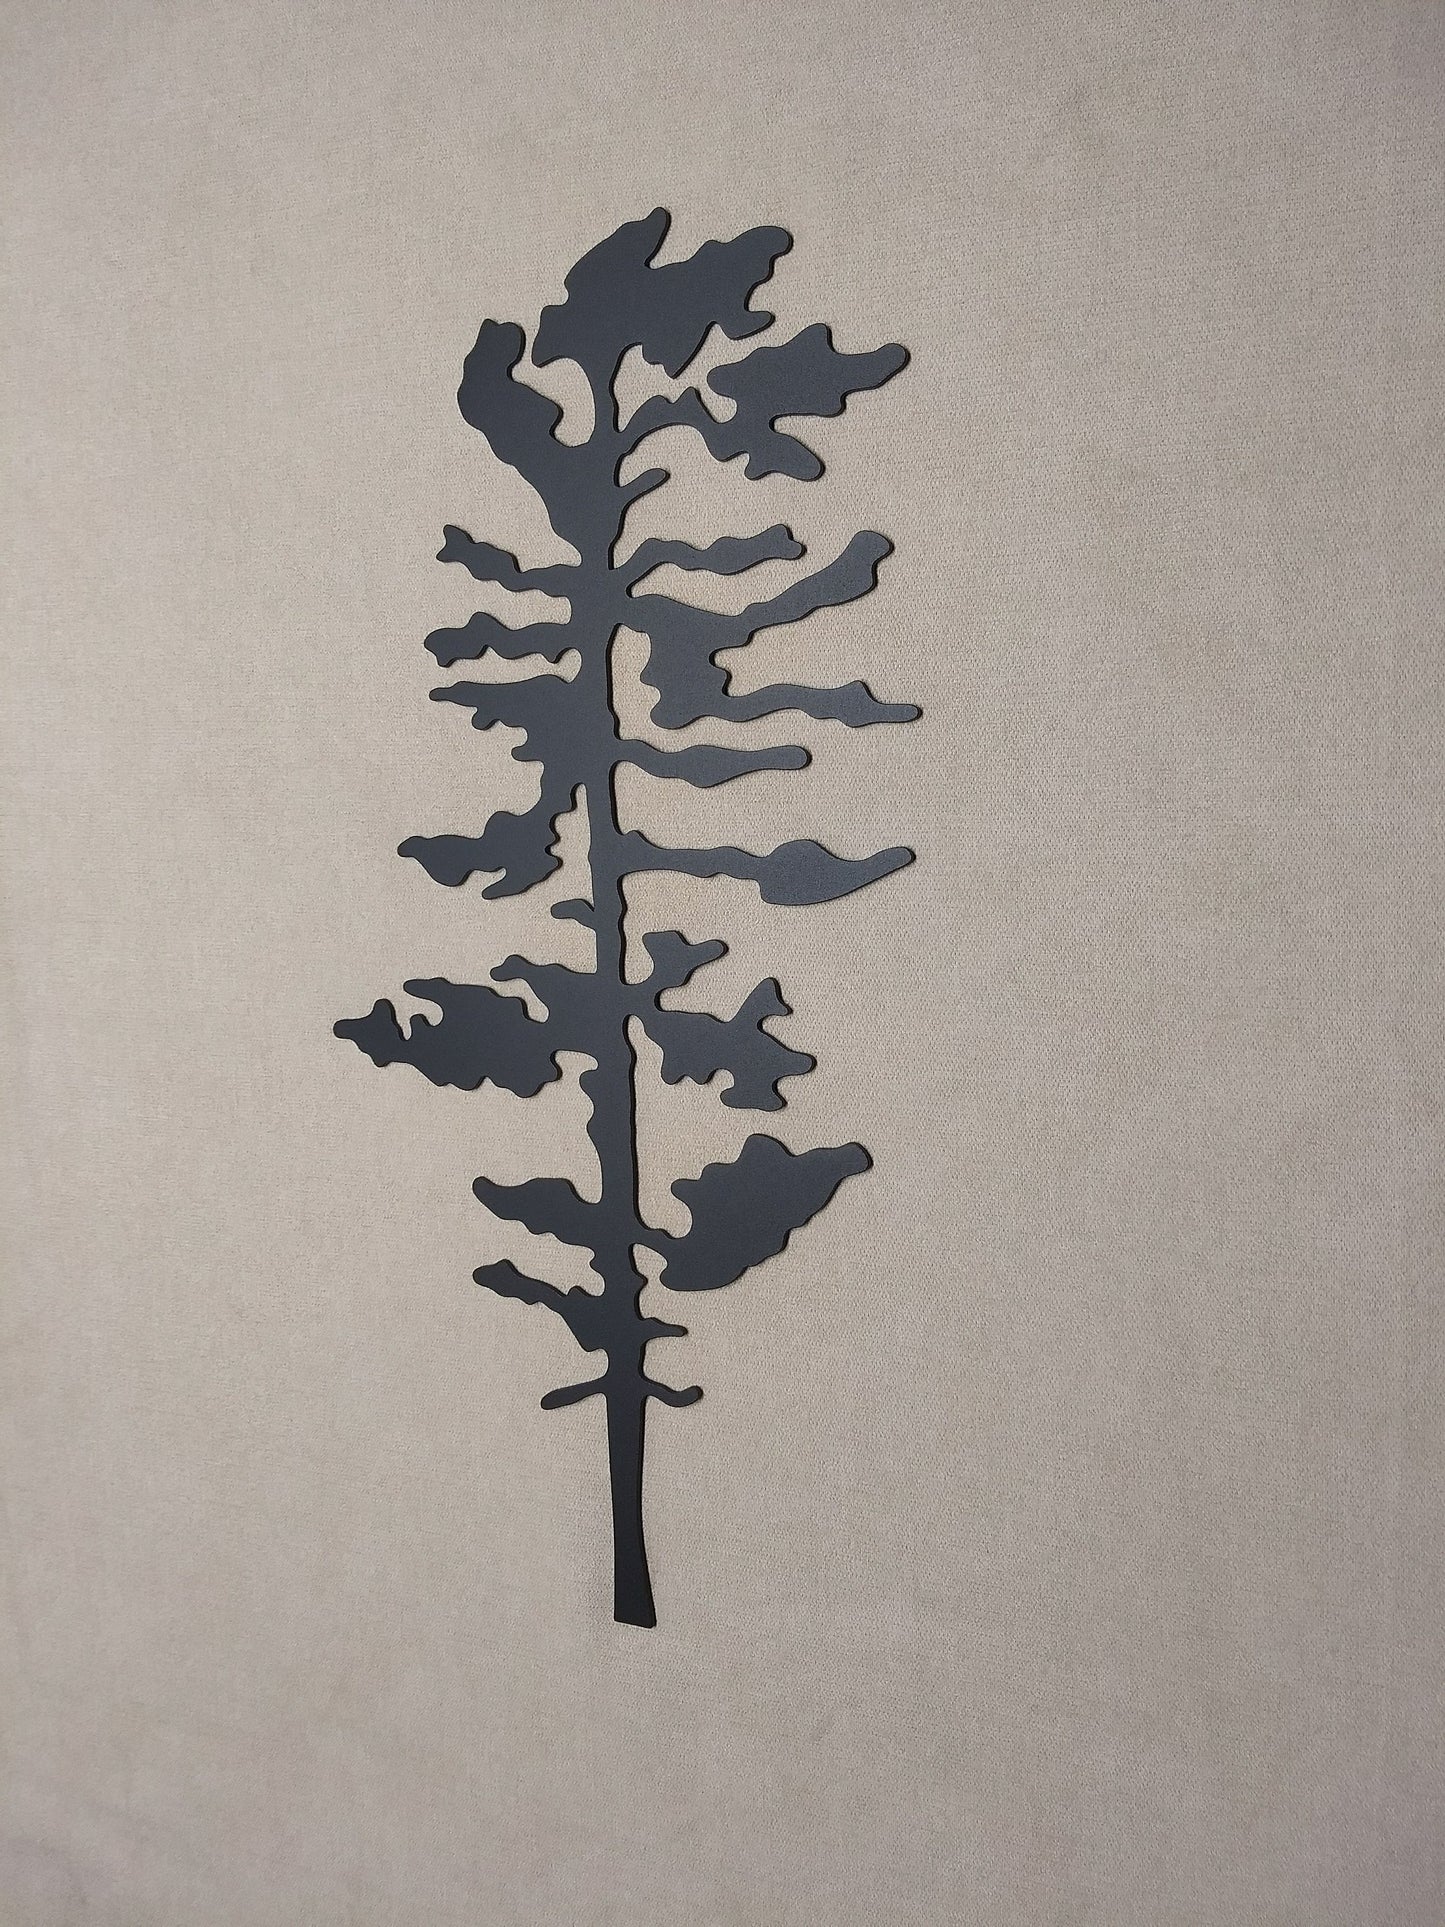 Evergreen Tree White Pine, Metal Wall Art